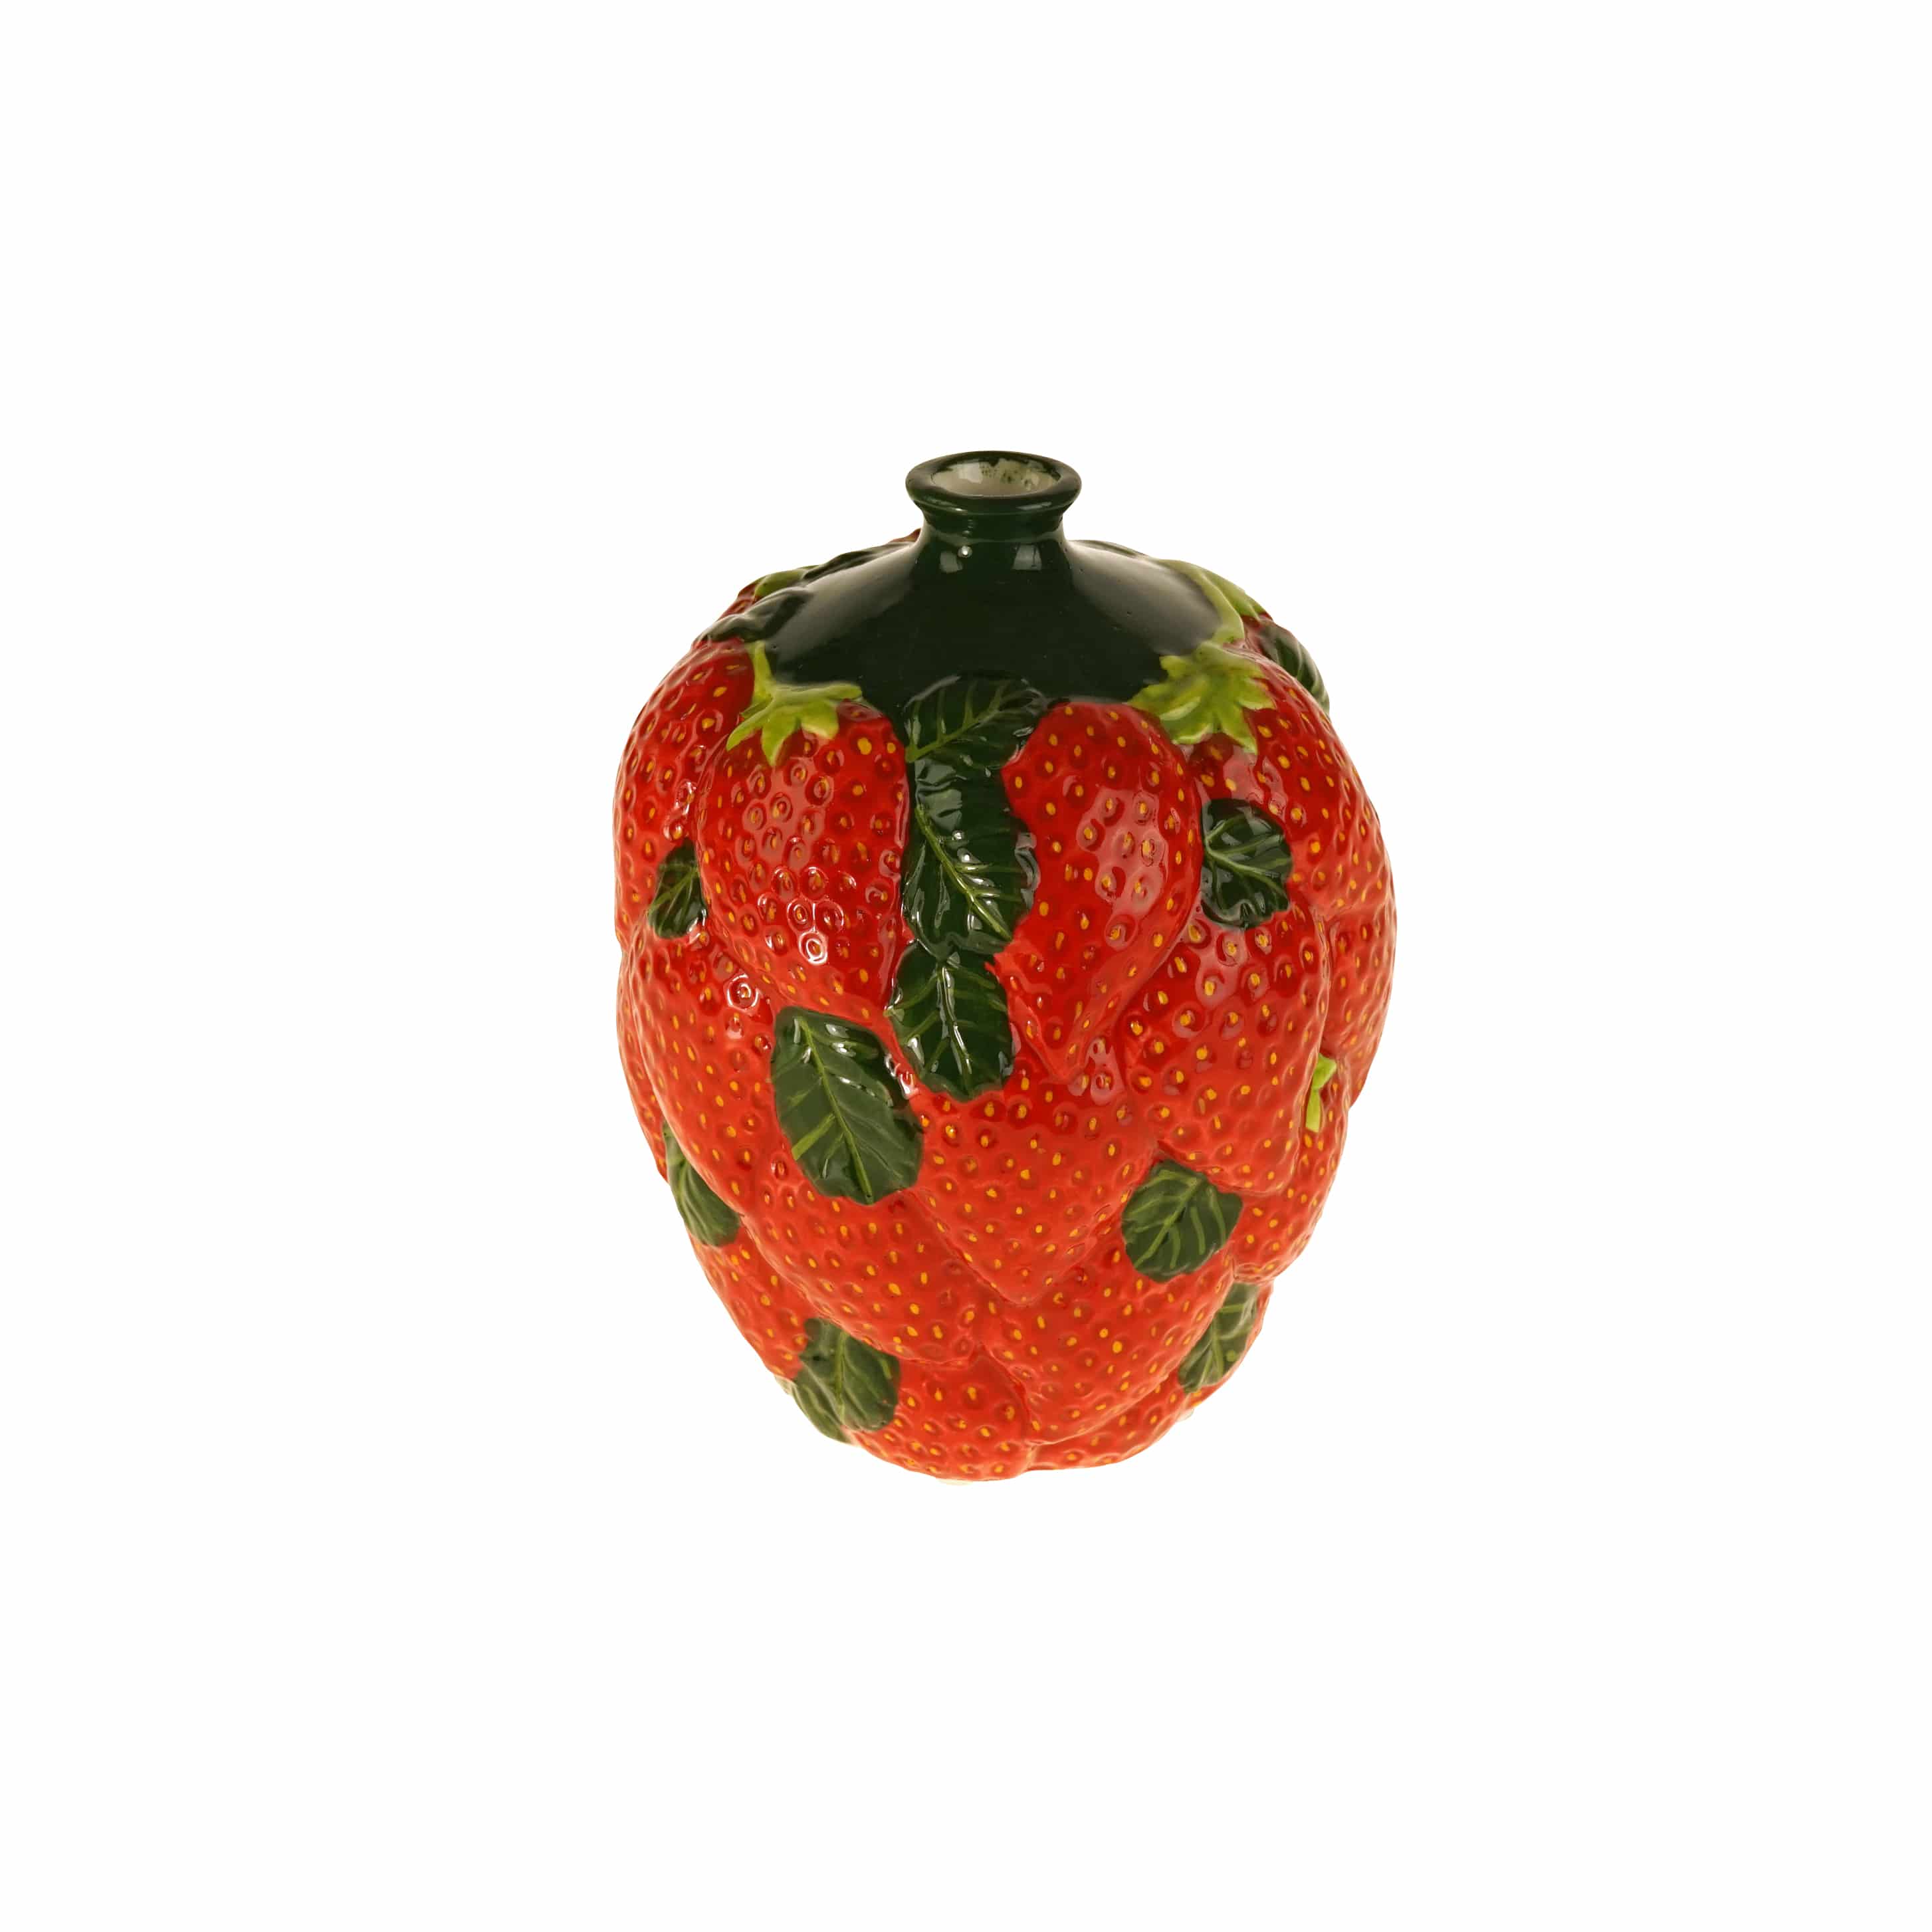 Dekovase Strawberries, Erdbeere m. Blättern, rot-grün, handbemalt